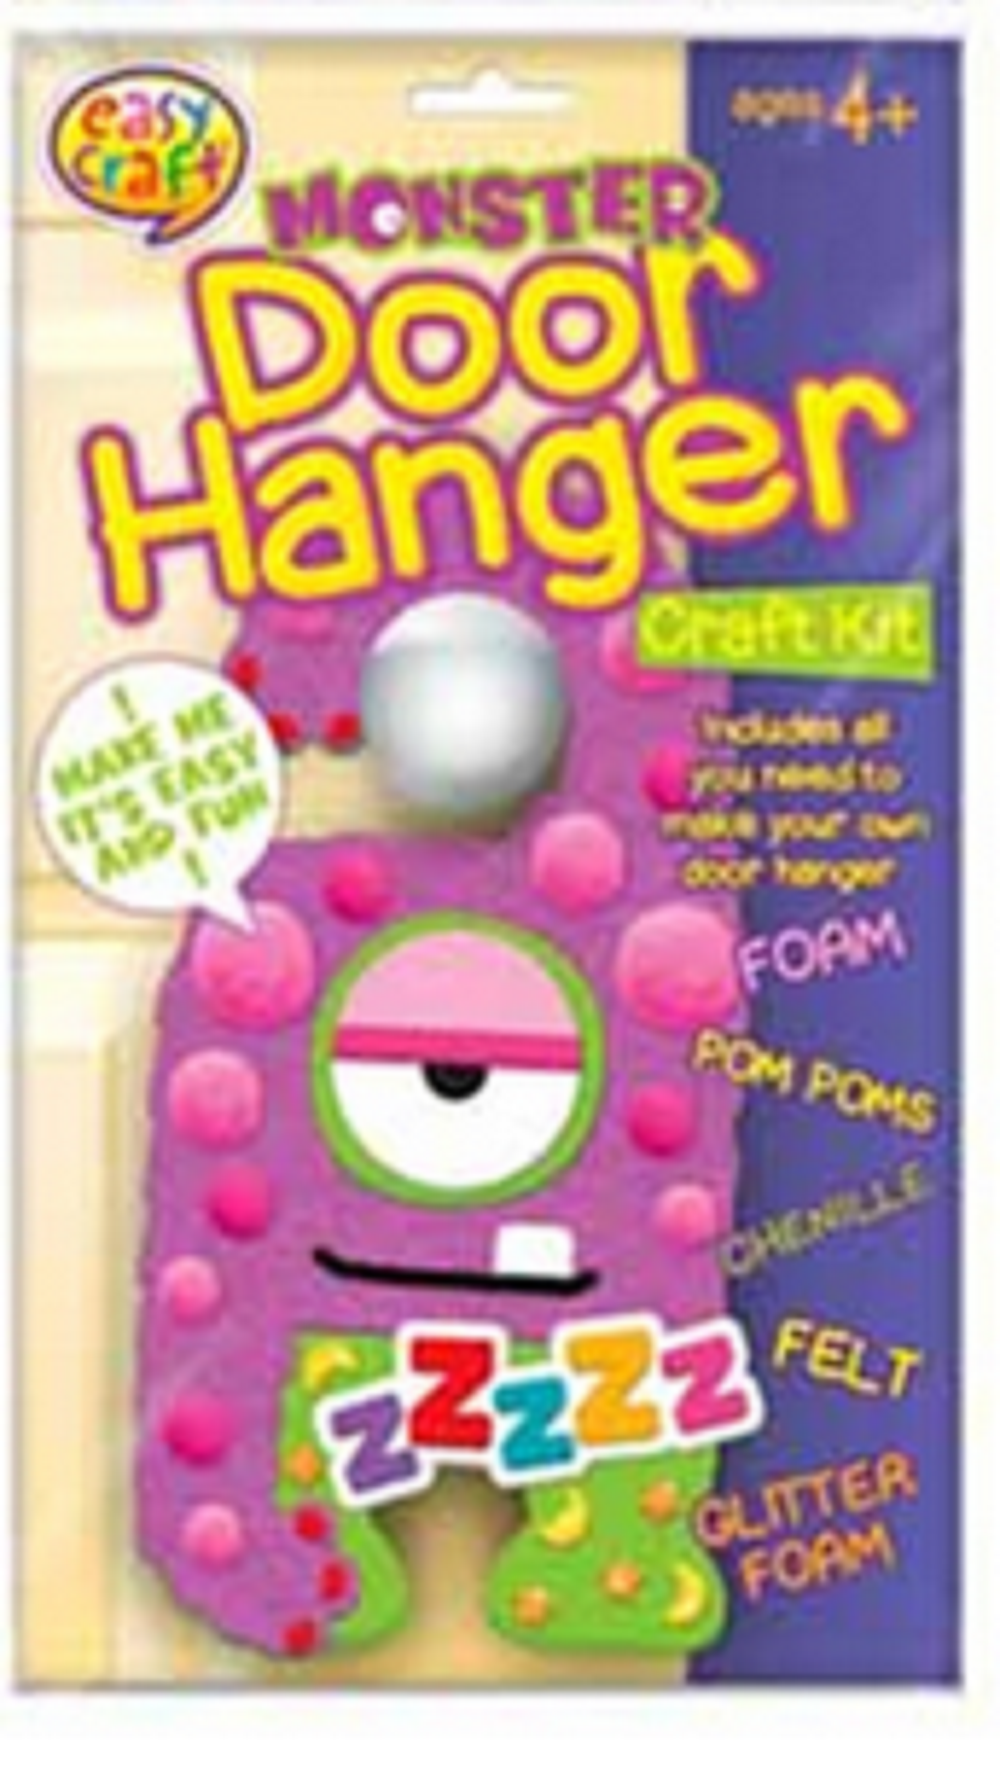 Kreative Kidz Monster Door Hangers